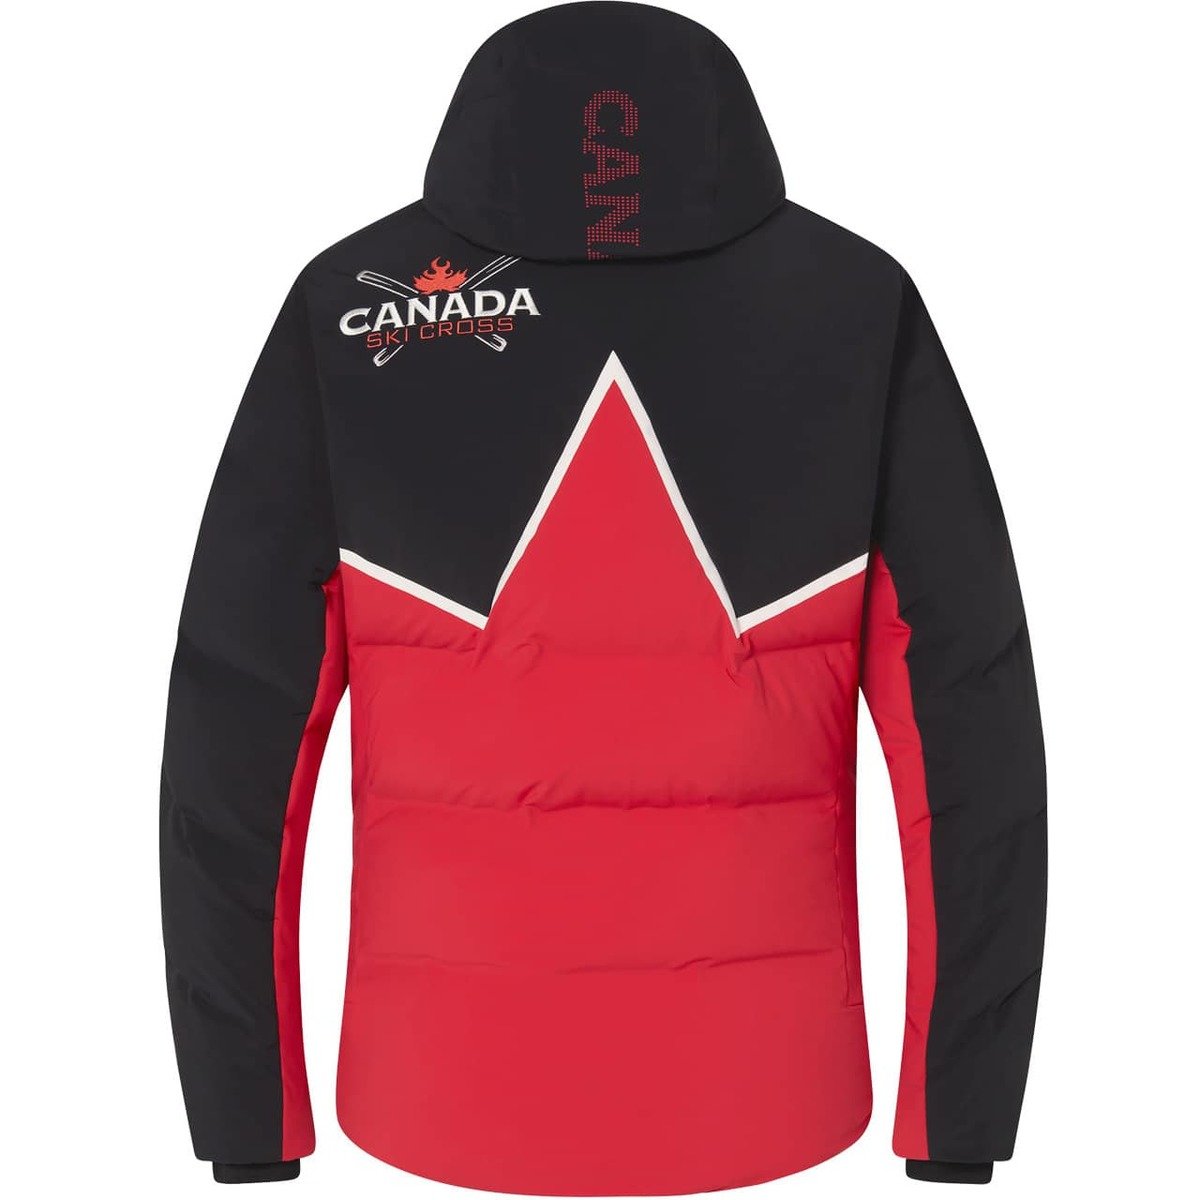 Pánská lyžařská bunda DESCENTE CANADA CSX REPLICA - 46, electric red/black